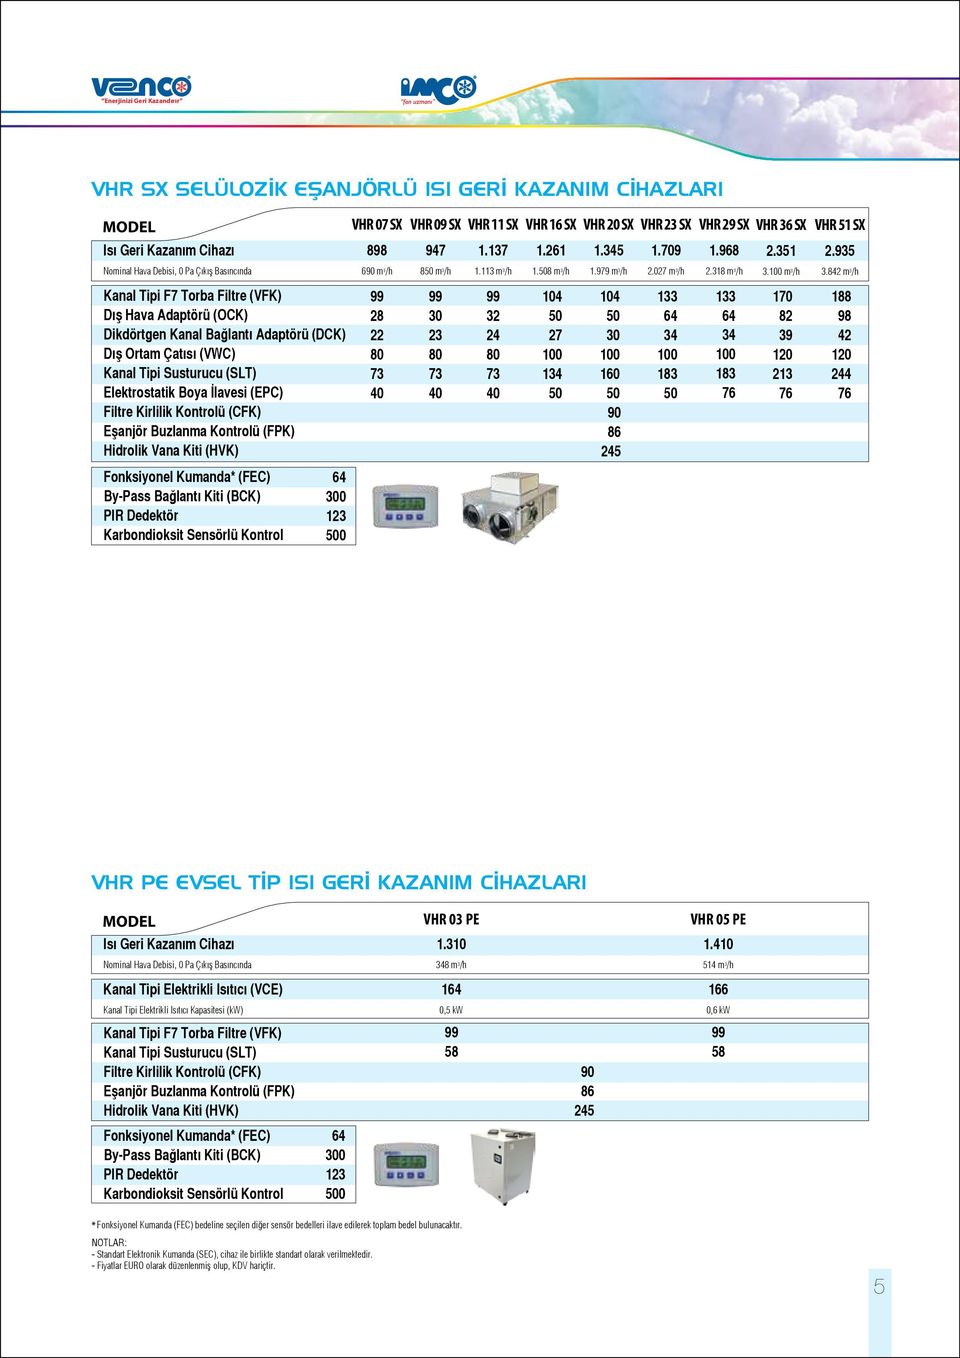 Kirlilik Kontrolü (CFK) Eşanjör Buzlanma Kontrolü (FPK) Hidrolik Vana Kiti (HVK) Fonksiyonel Kumanda* (FEC) By-Pass Bağlantı Kiti (BCK) PIR Dedektör Karbondioksit Sensörlü Kontrol 6 0 0 898 690 m /h